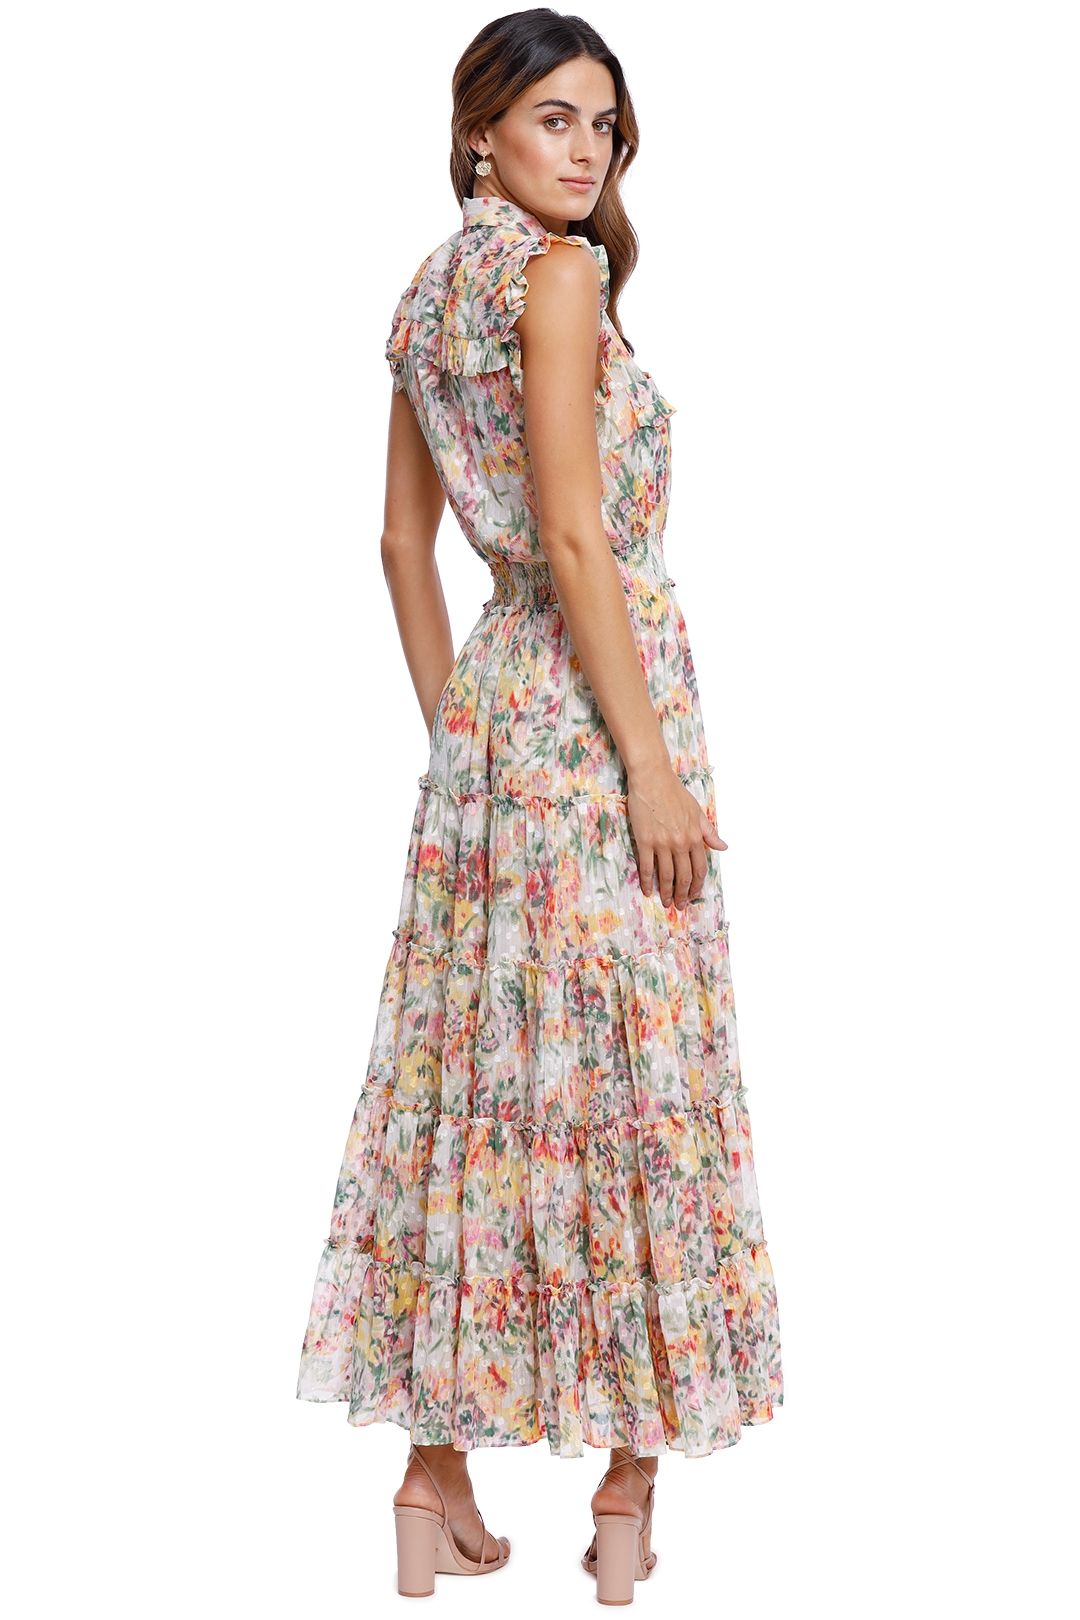 Misa LA Trina Dress Floral